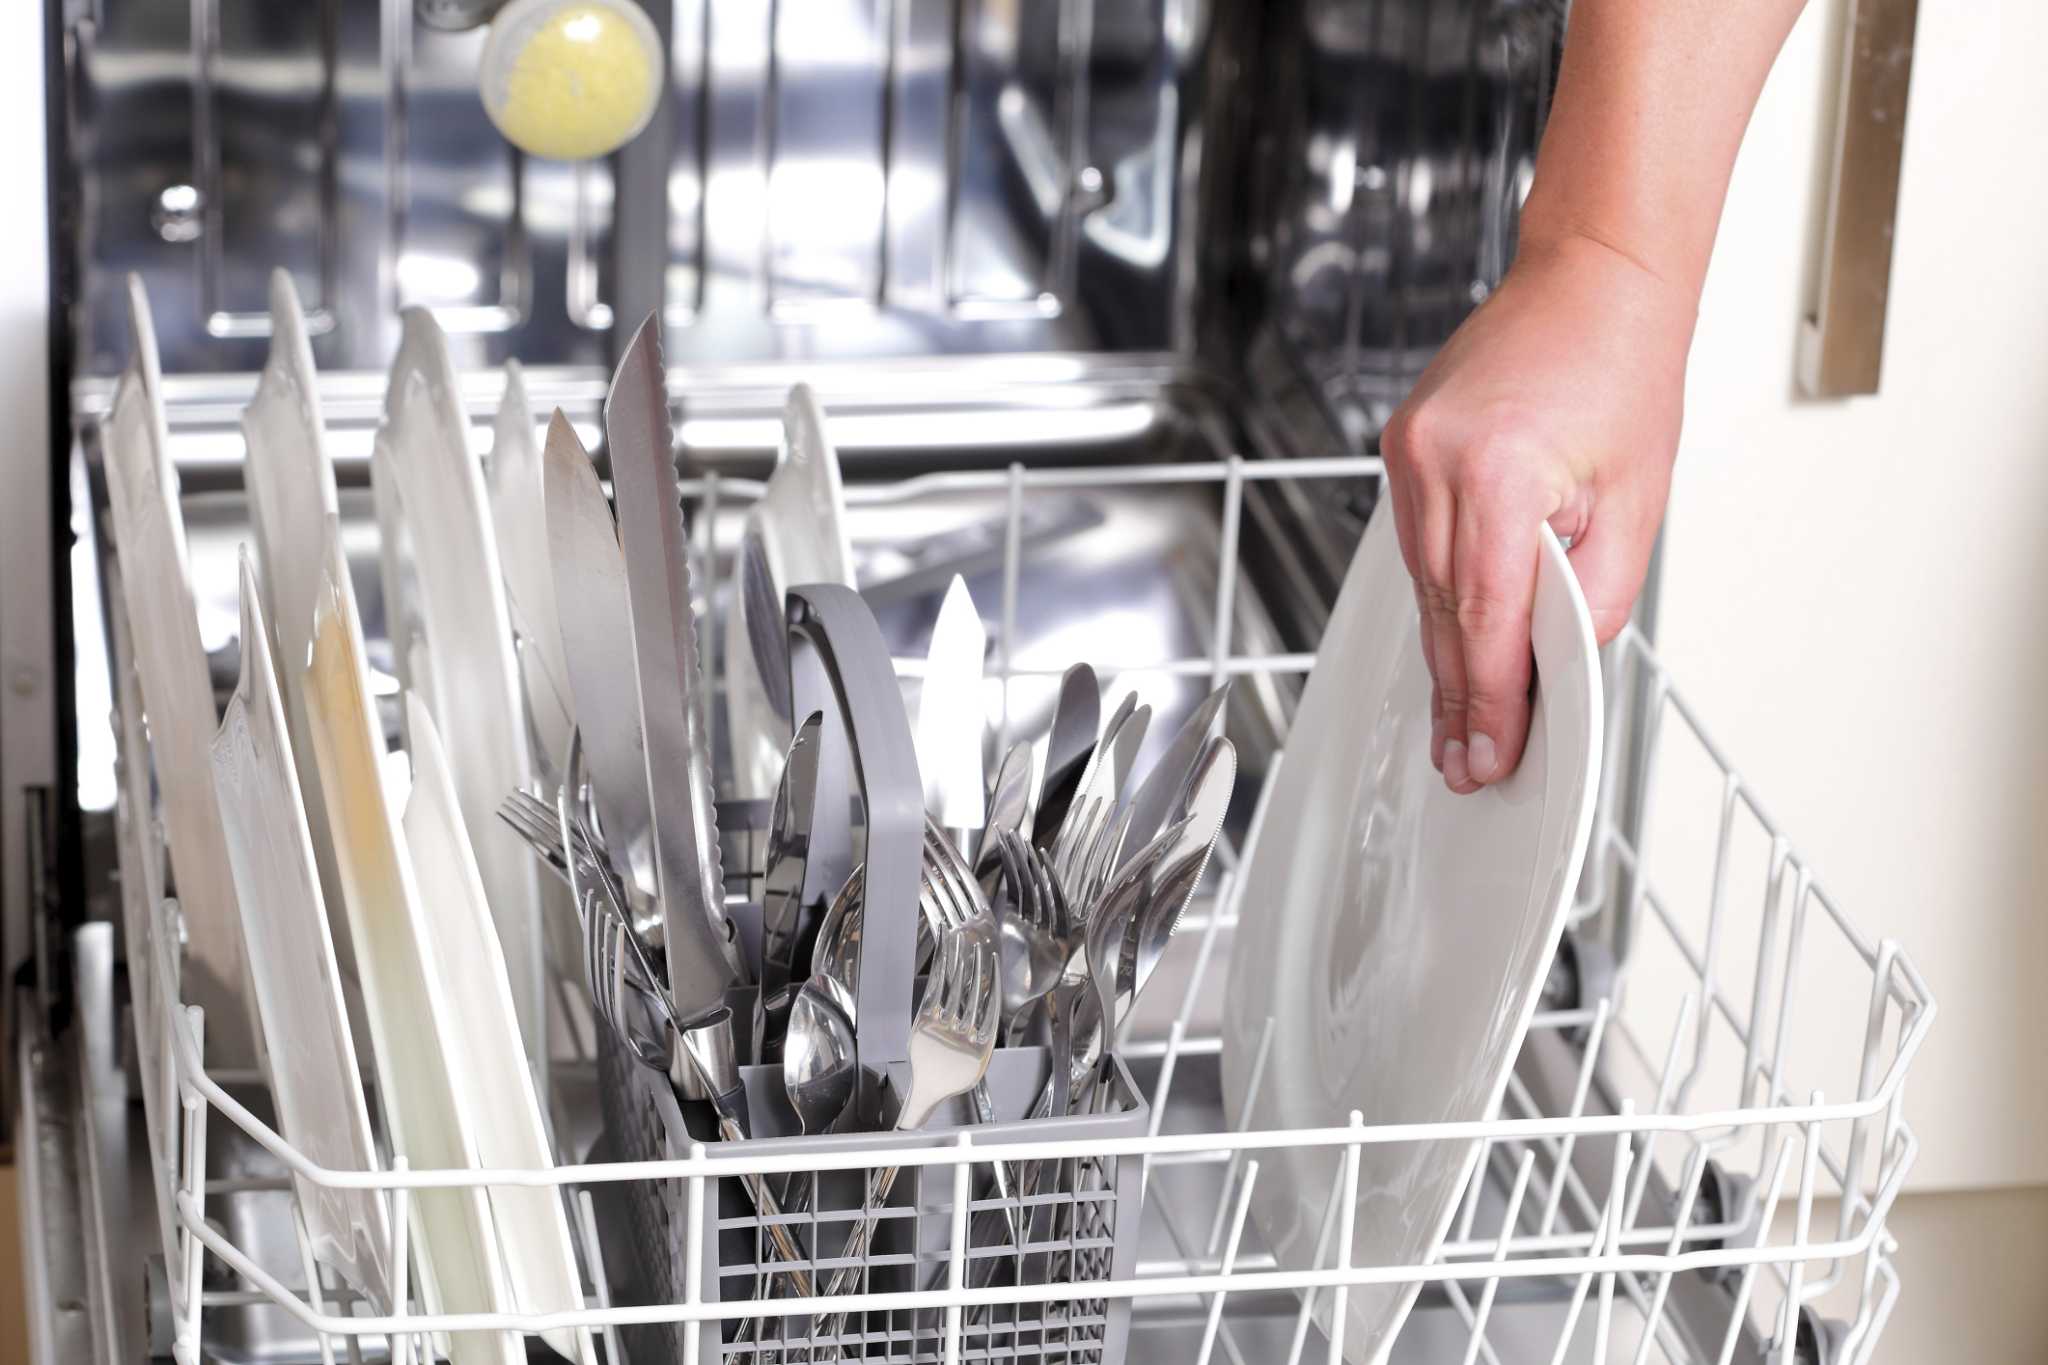 Посудомойка плохо отмывает. Посуда в посудомойке. Грчзная посуду в посудомоечную машину. Посудомойка с грязной посудой. Загружать посудомойку.